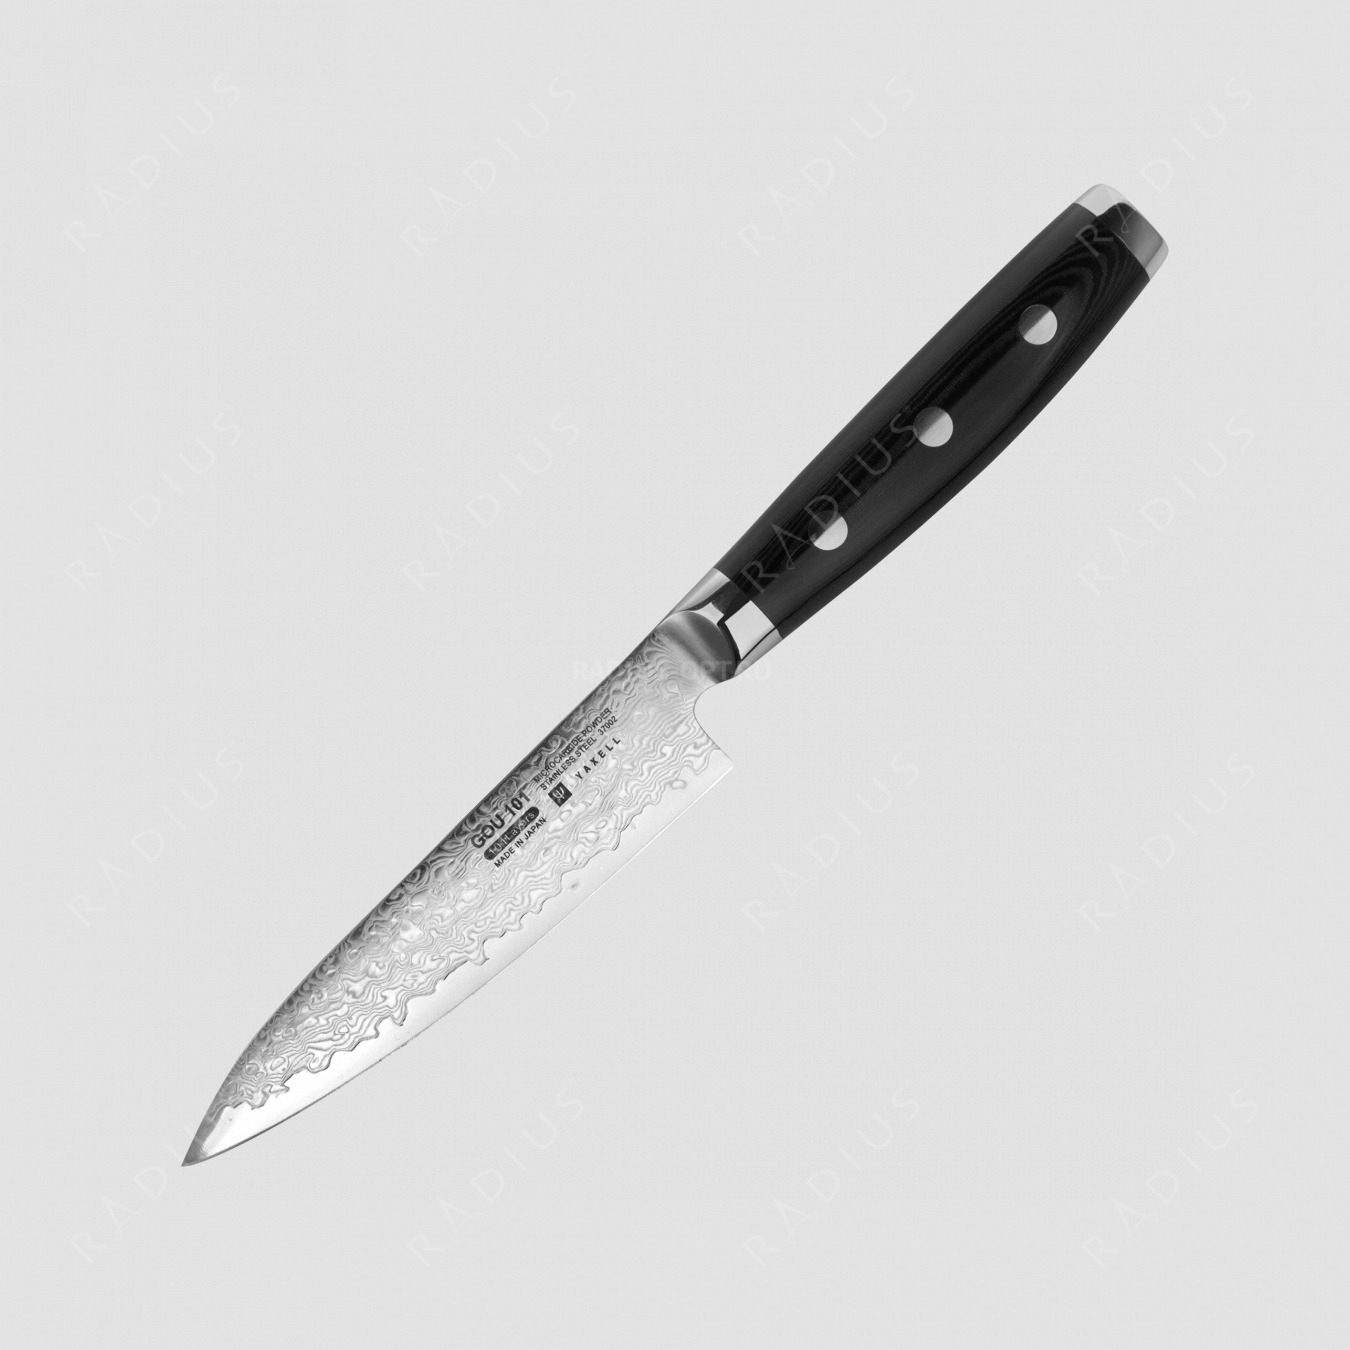 Нож кухонный универсальный 12 см, «Petty», дамасская сталь, серия Gou, YAXELL, Япония